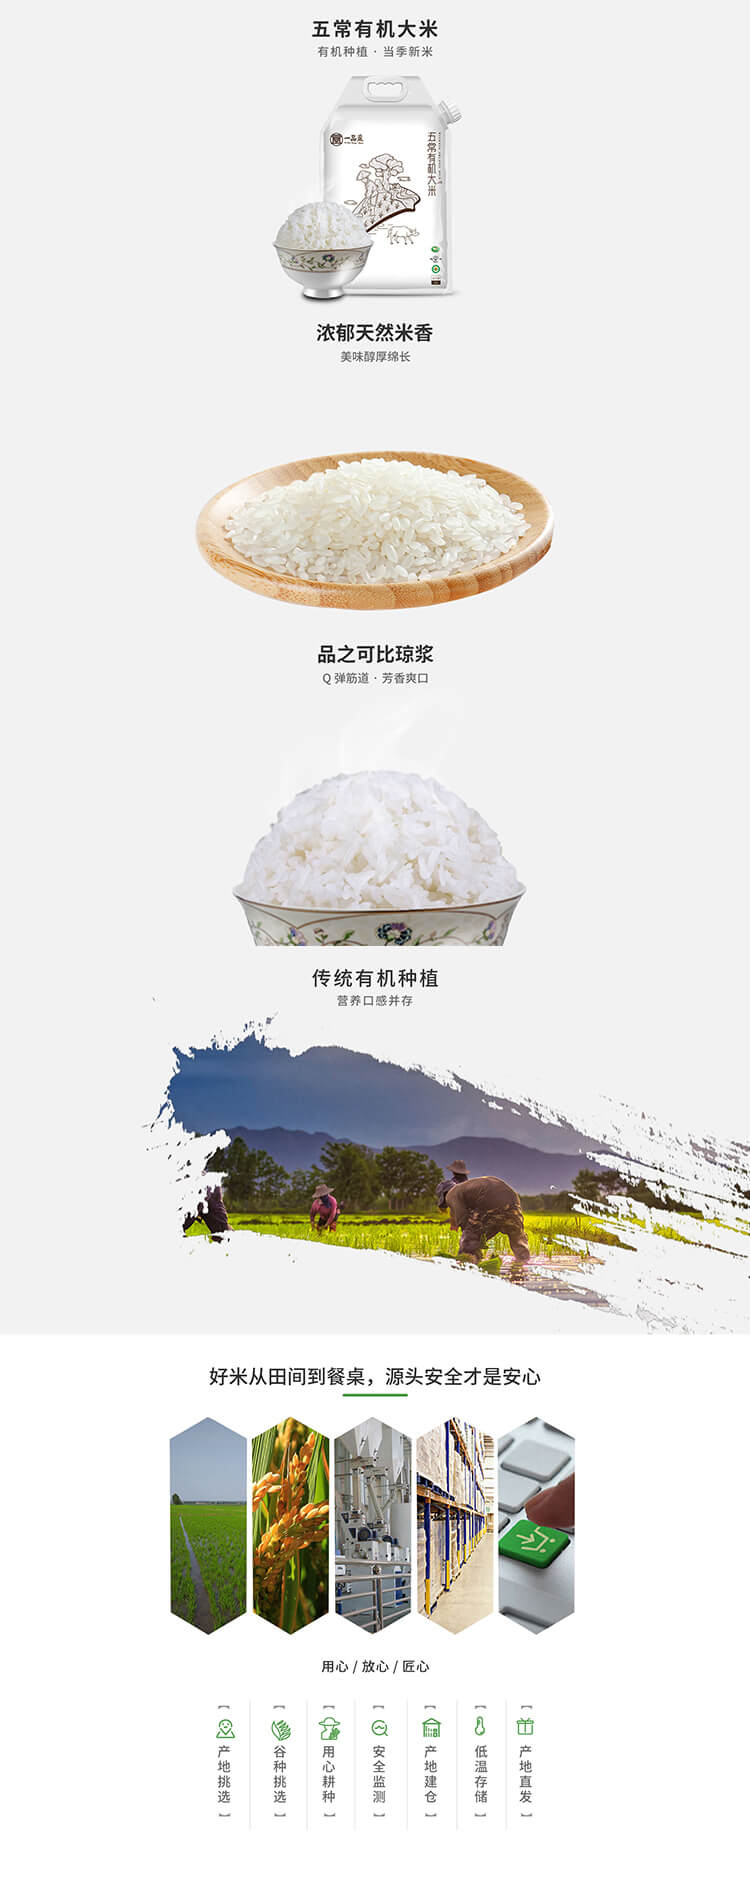 中国长粒香哪个牌子好吃_ 长粒香米哪家好相关-深圳大谷米业有限公司